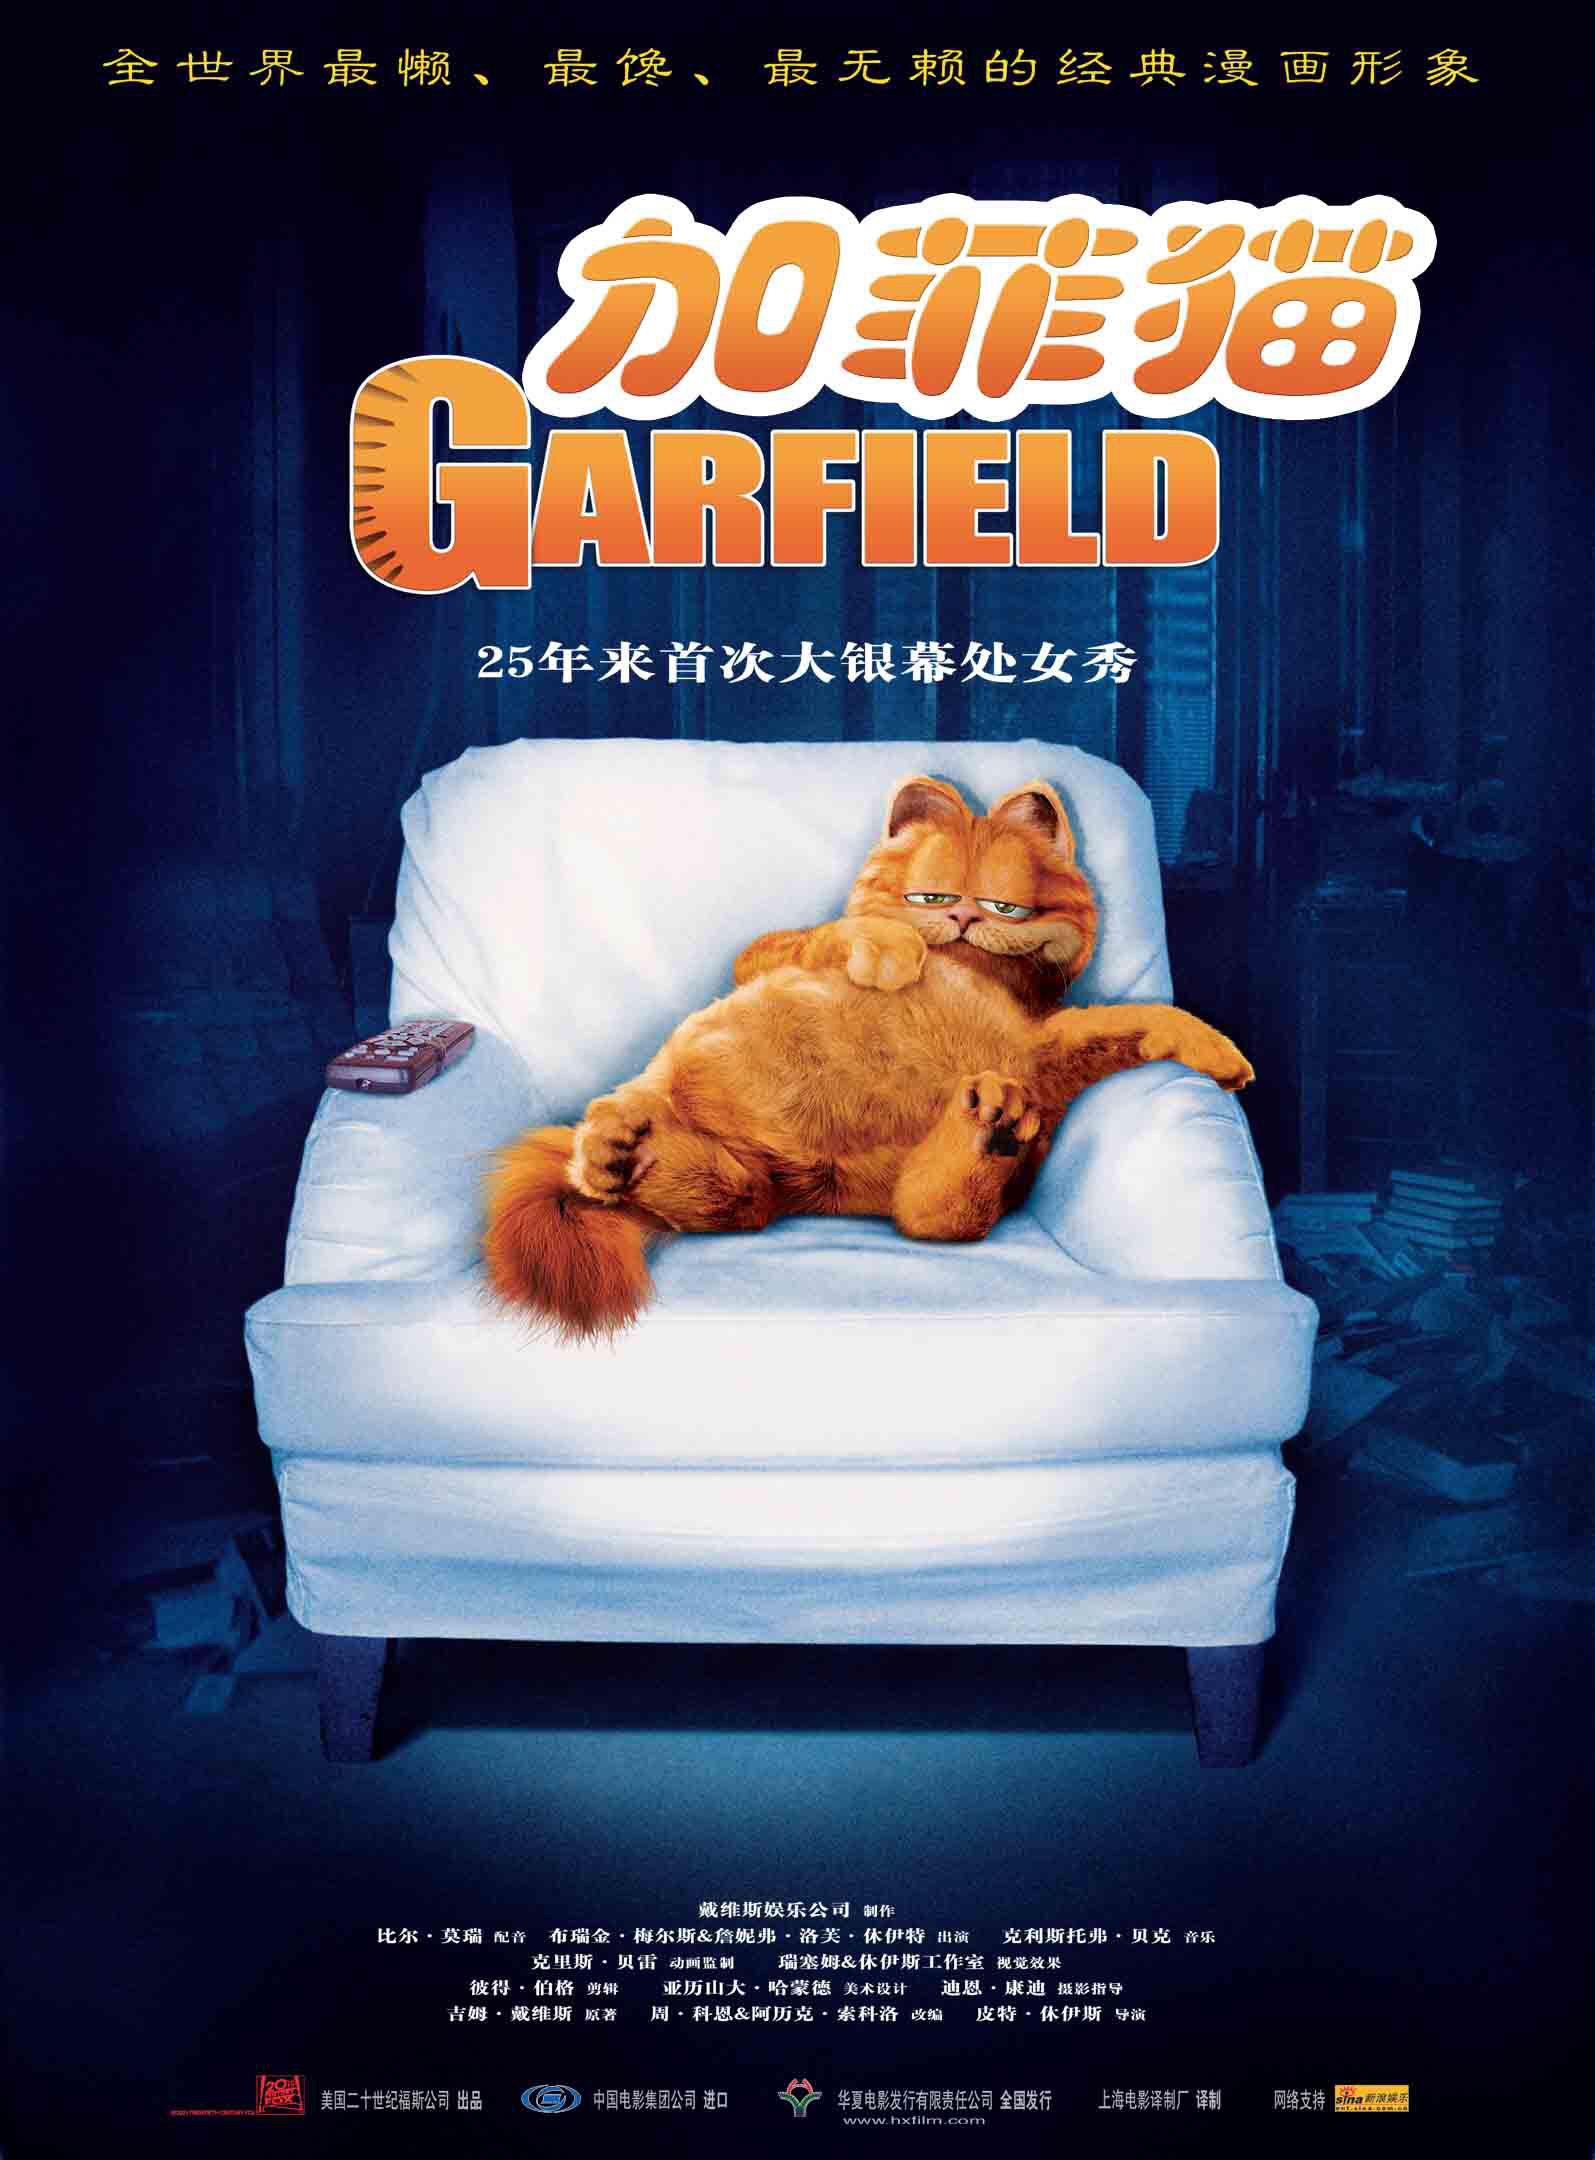 新版《加菲猫》发布首张海报 克里斯·帕拉特配音